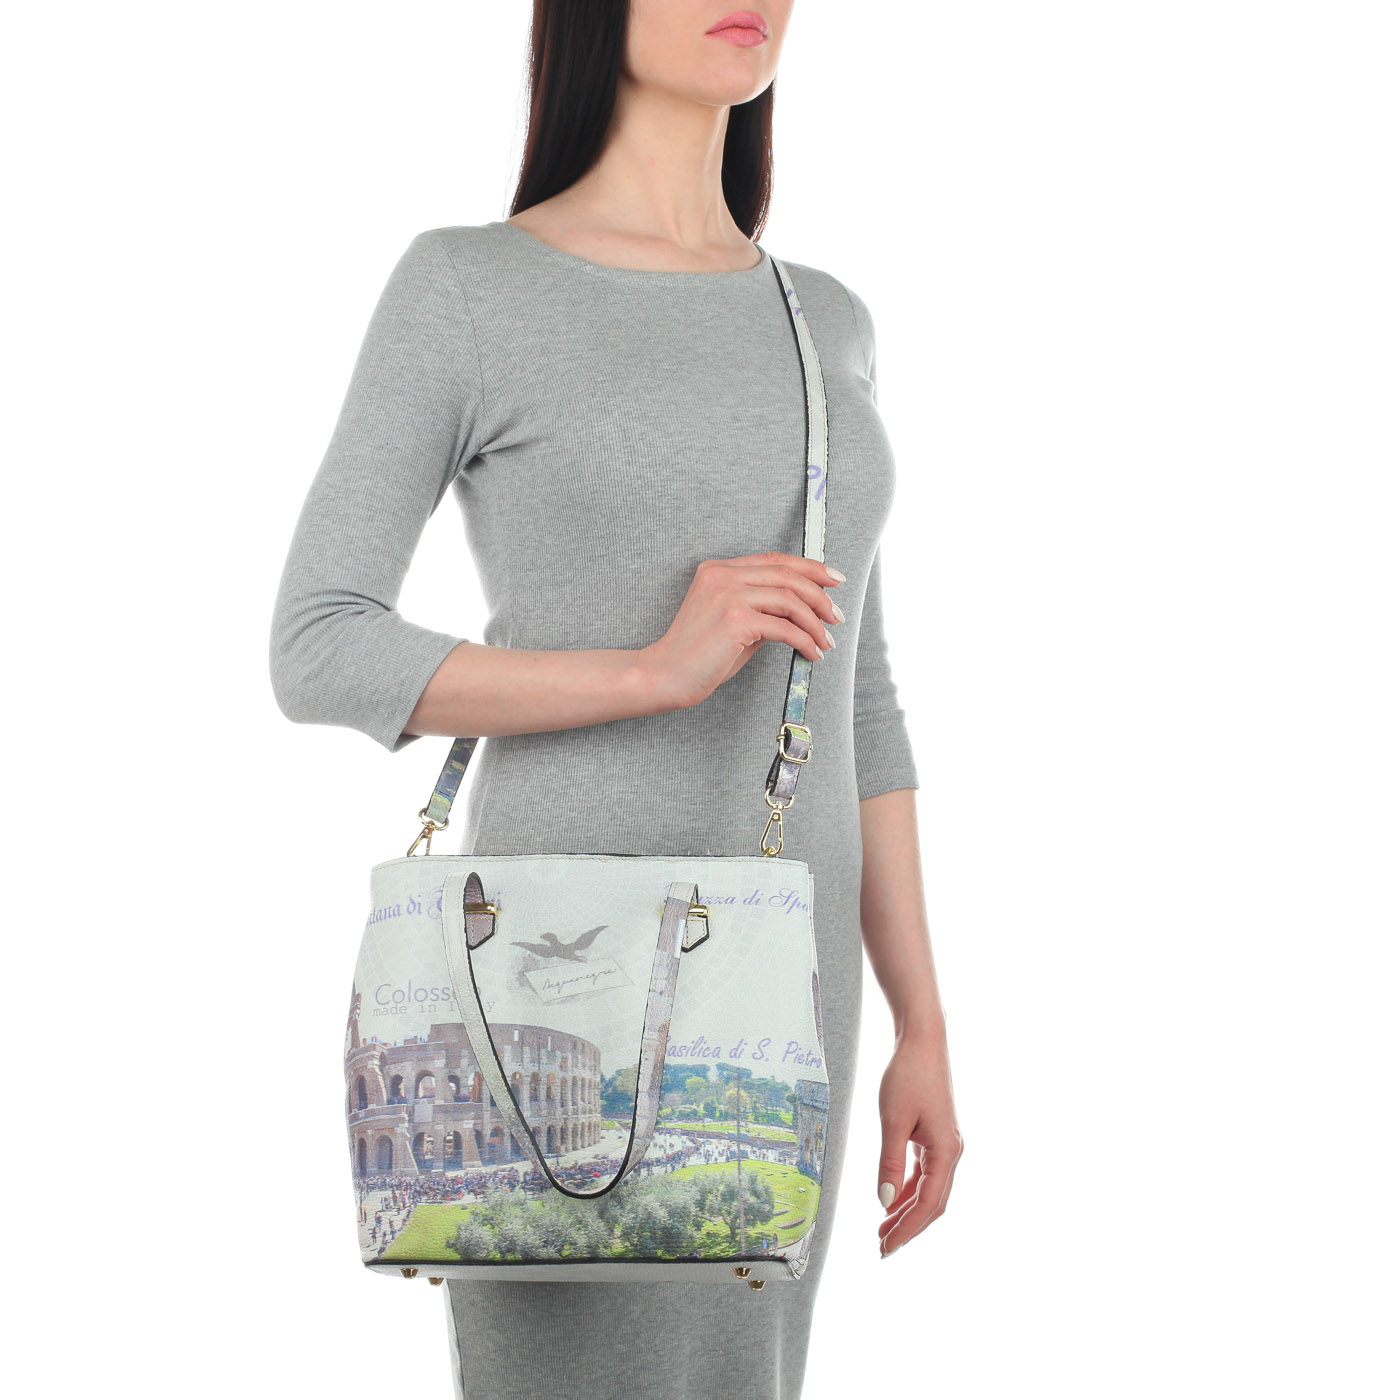 Кожаная женская сумка с длинными ручками Acquanegra Colosseo